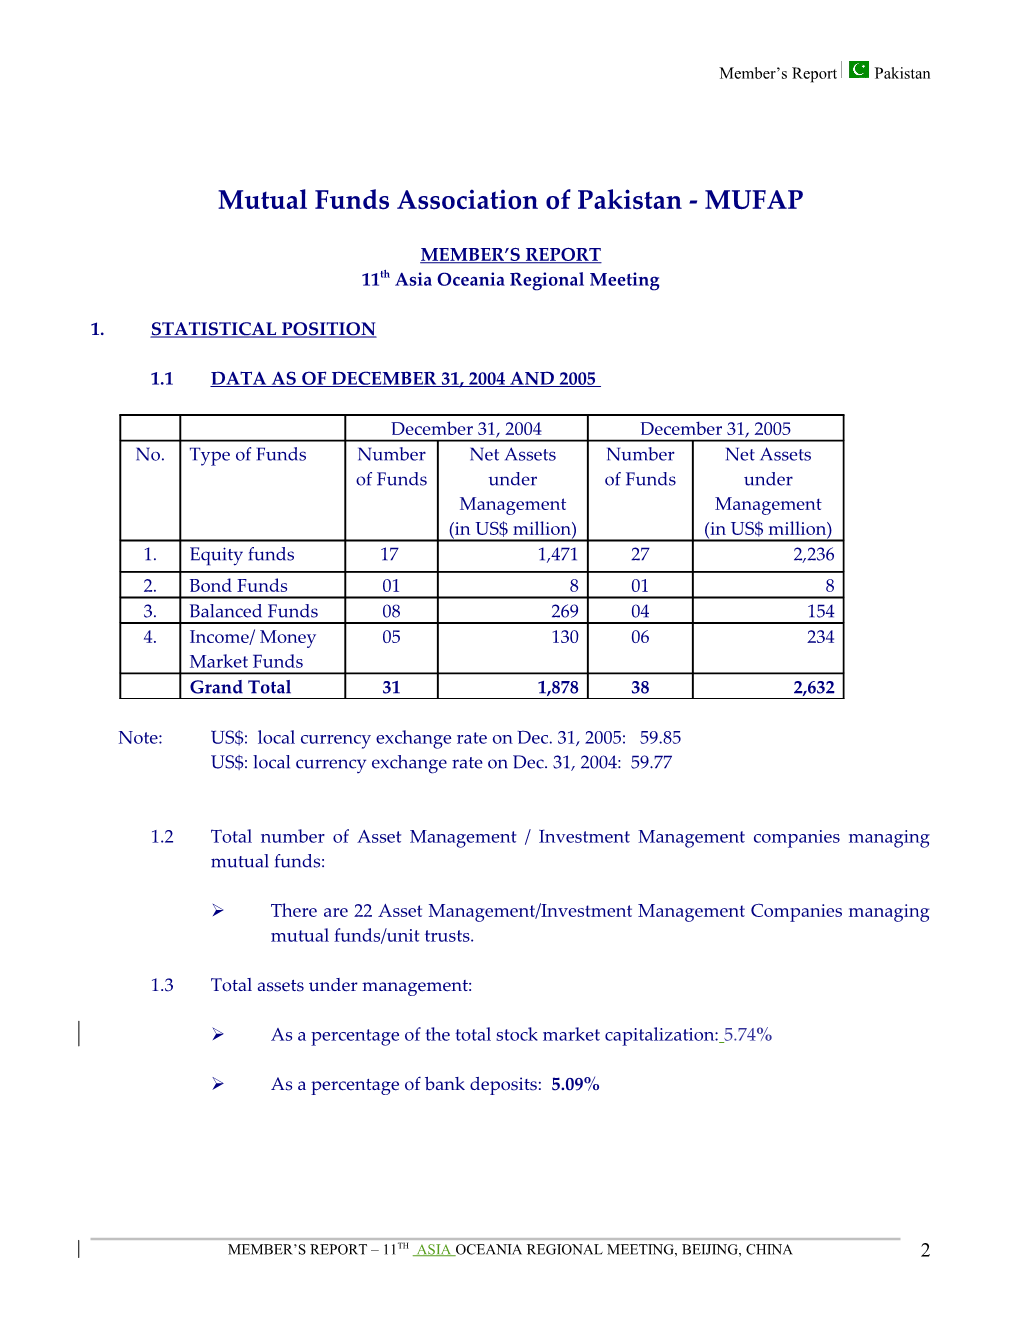 Mutual Funds Association of Pakistan - MUFAP